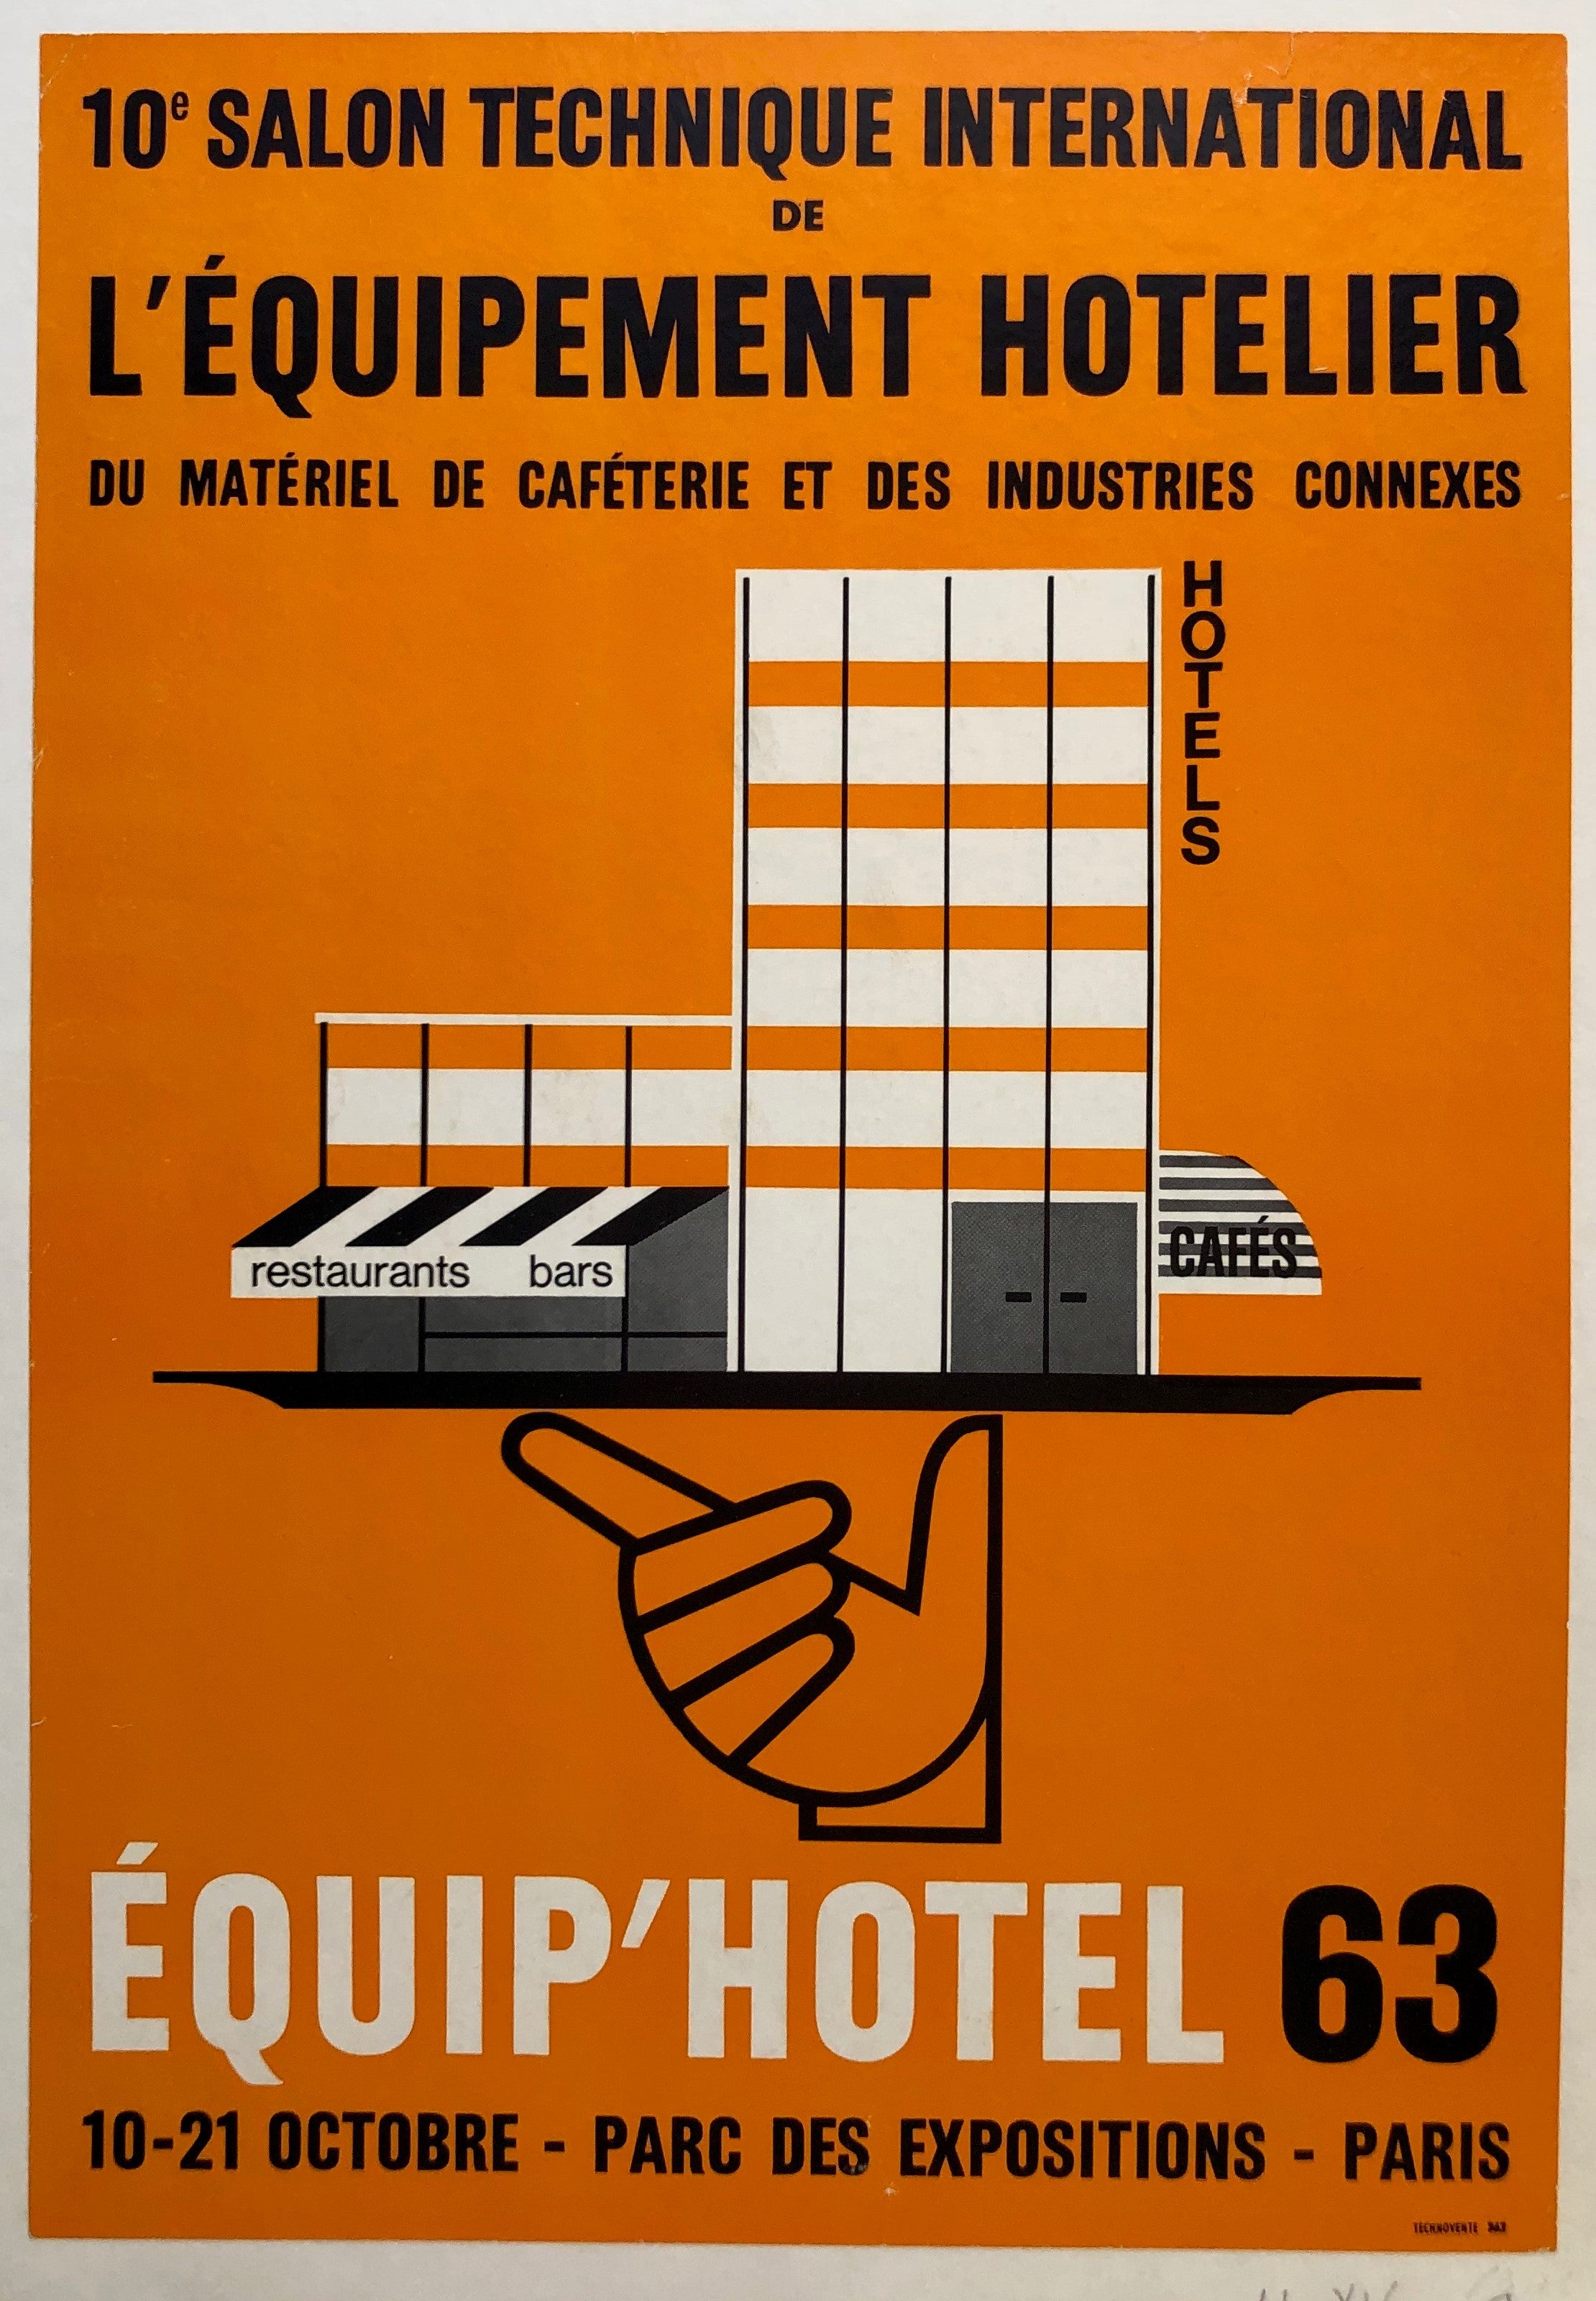 L'Equipement Hotelier du Materiel de Cafeteria et des Industries Connexes - Equip'Hotel 63